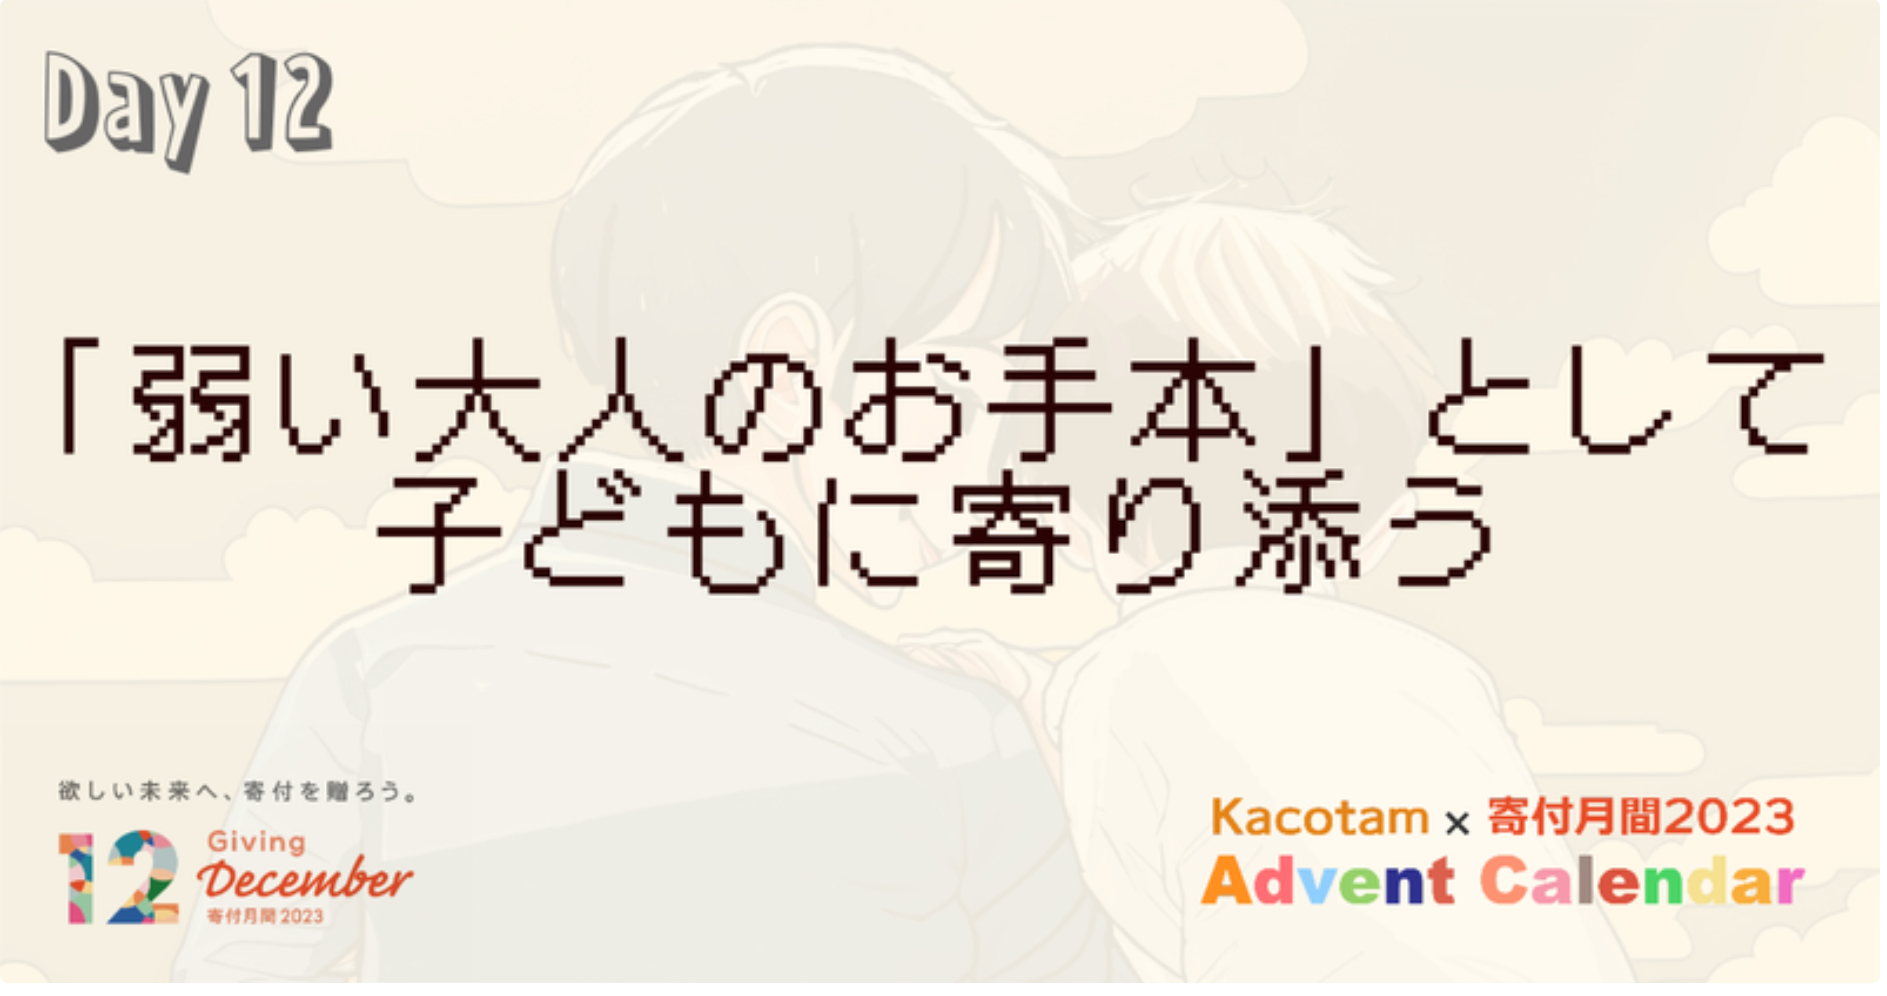 【12日目】「Kacotam x 寄付月間2023 アドベントカレンダー」の記事を公開しました